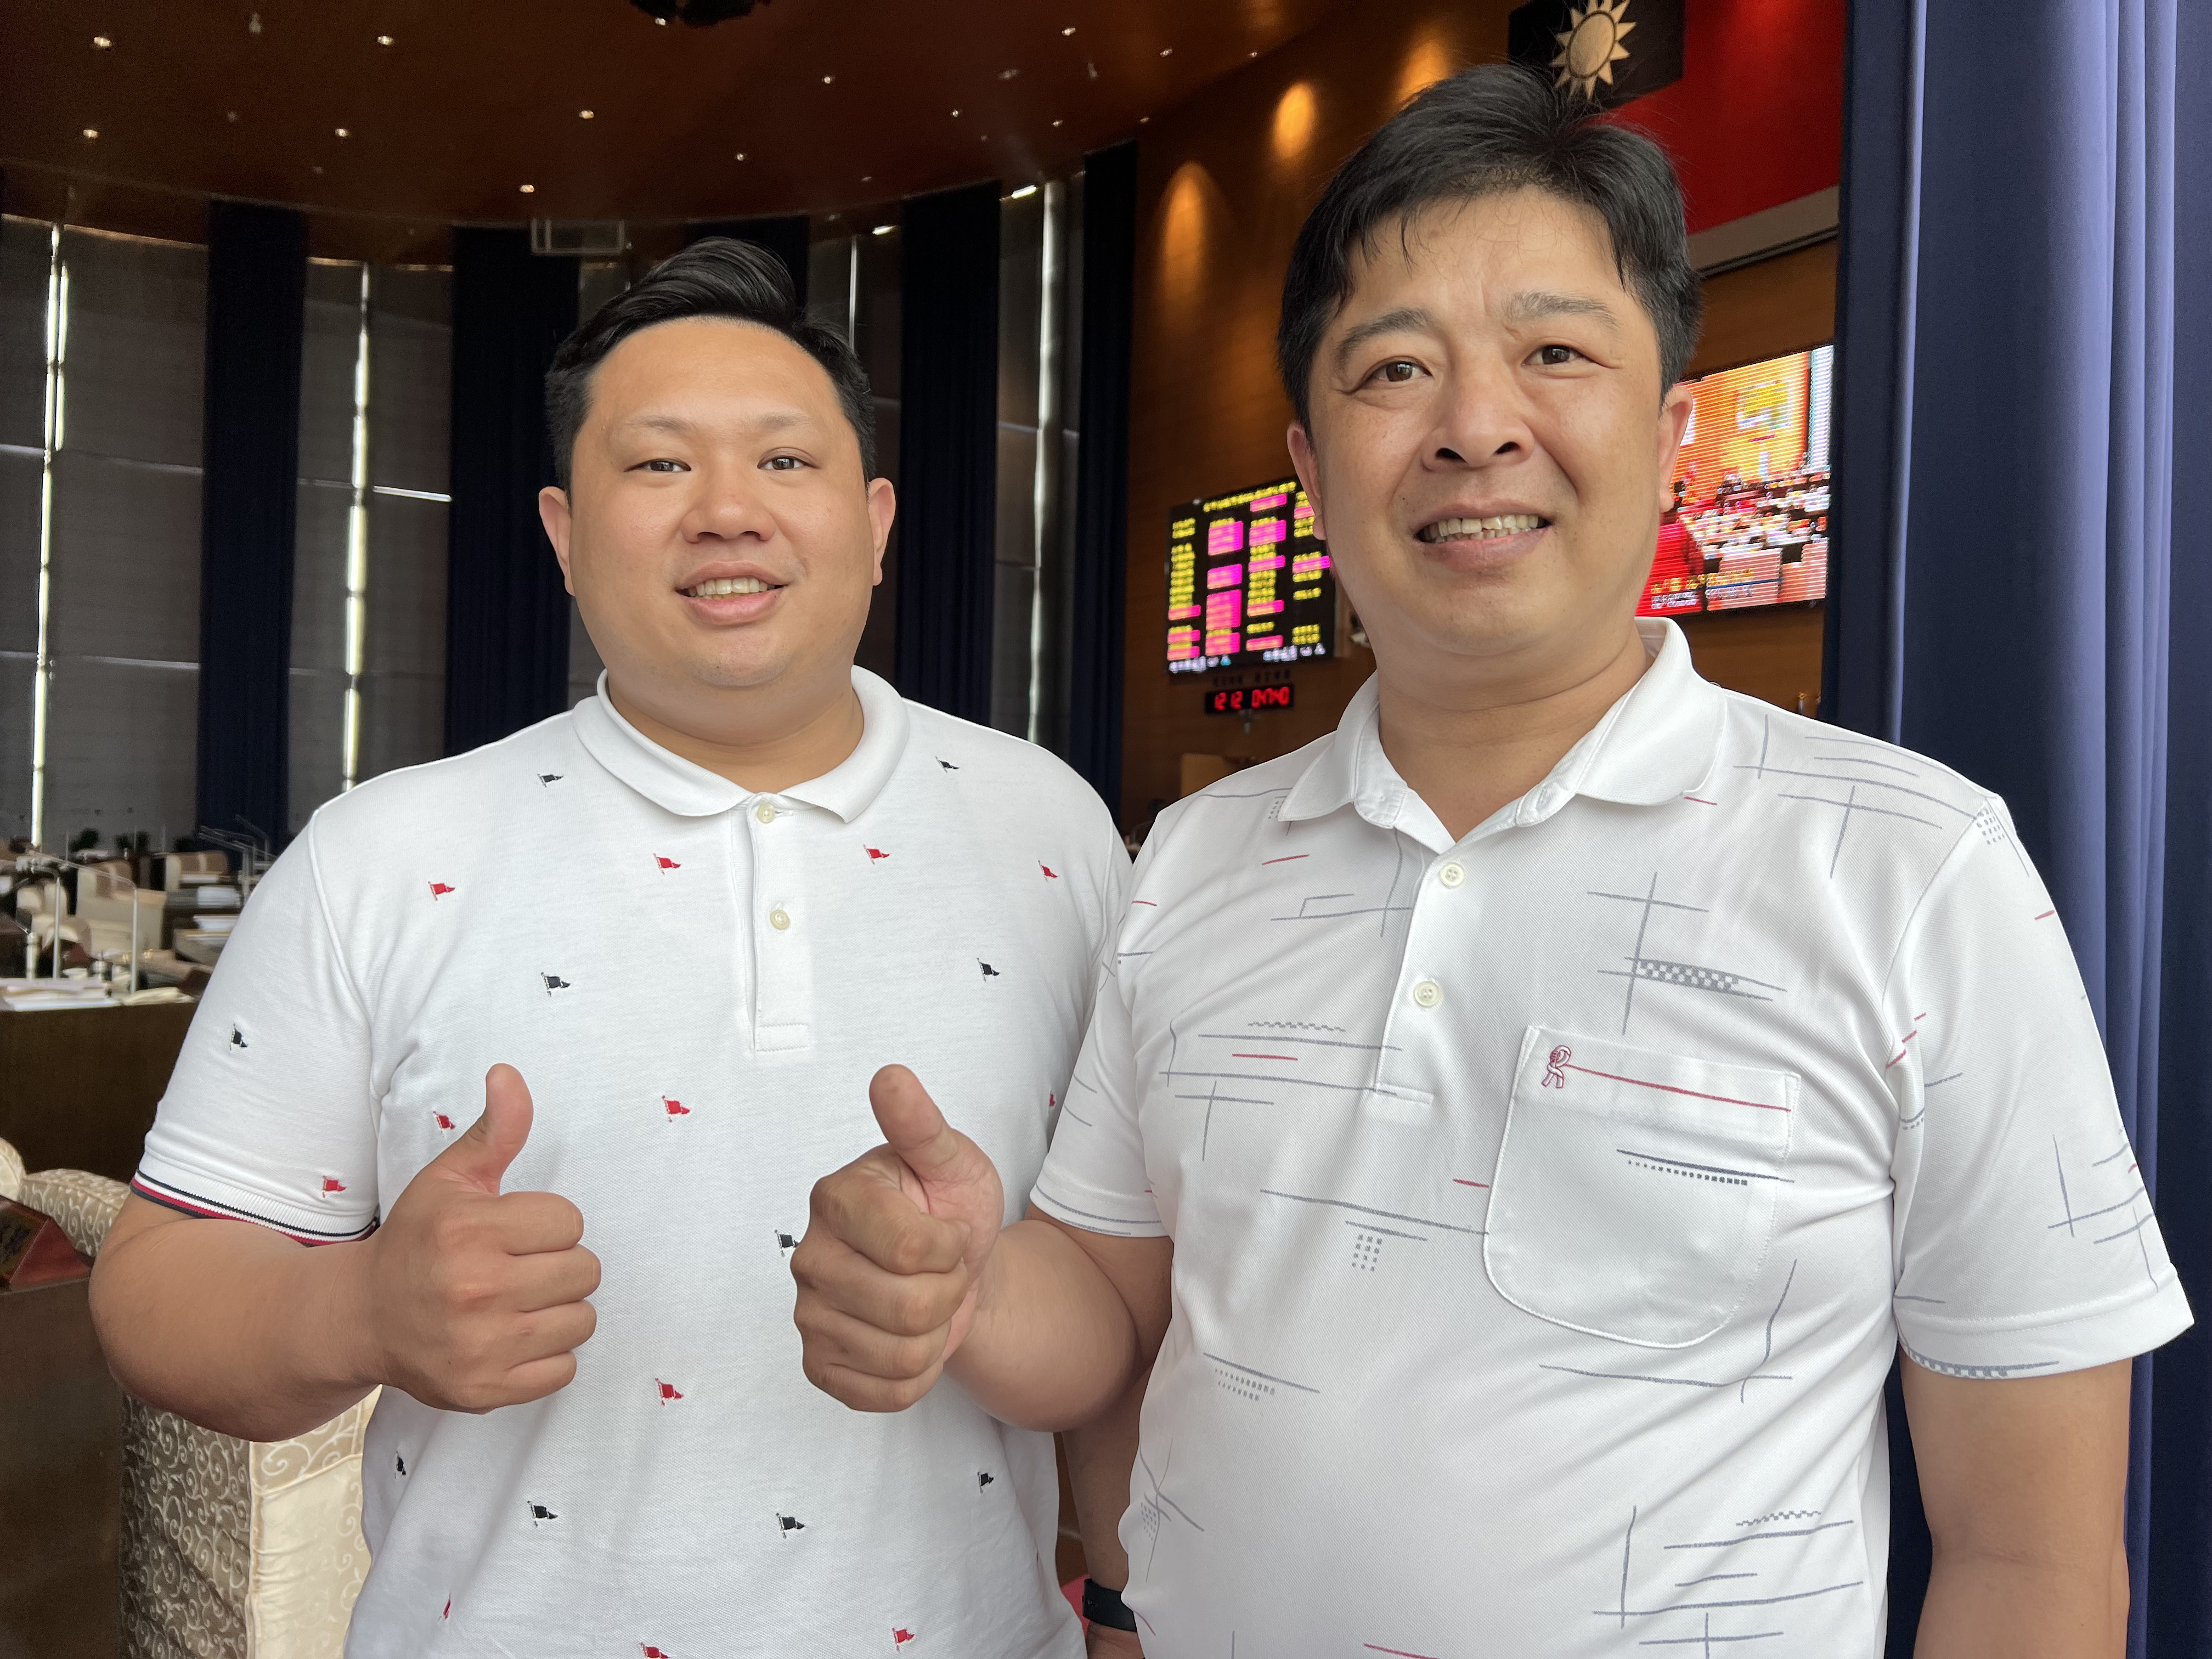 台中市议员吴呈贤（右）、准议员吴建德是市议会第一对「兄弟档」。记者陈秋云/摄影